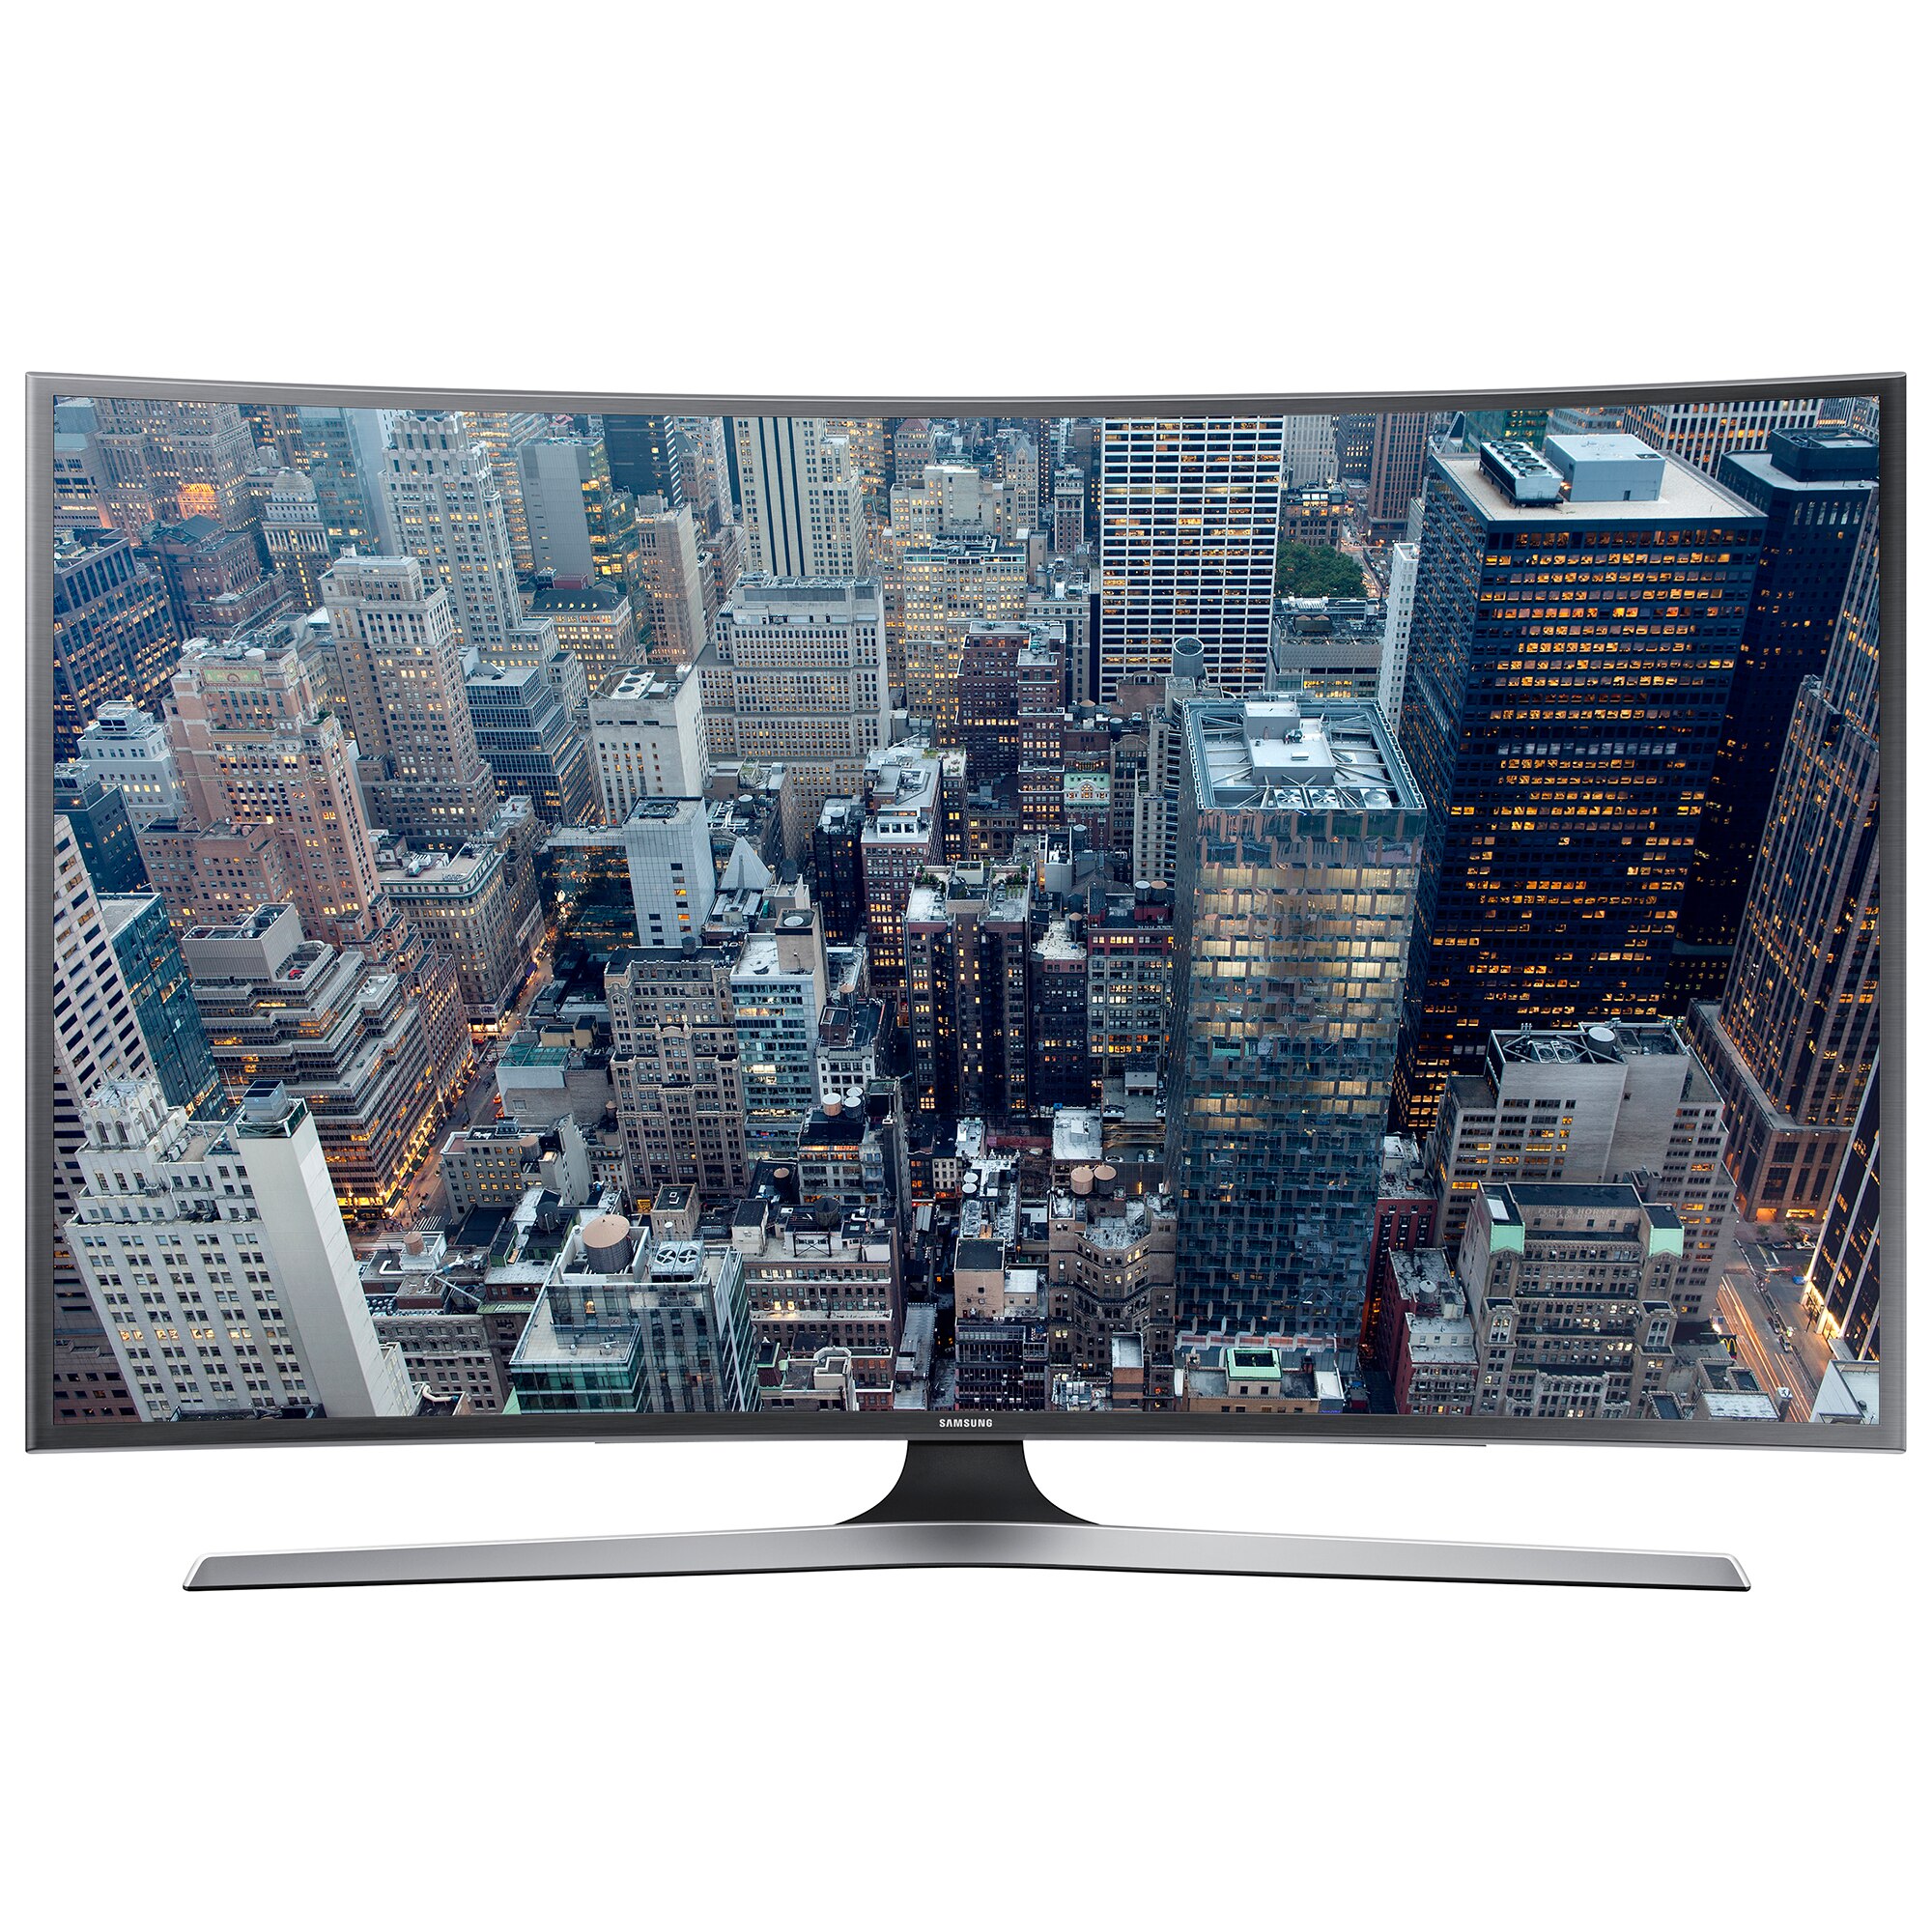 Телевизор samsung купить в спб. Samsung ue40ju6400. Телевизор Samsung ue48ju7000. Телевизор Samsung ue48ju7002. Телевизор Samsung ue48ju6790u.